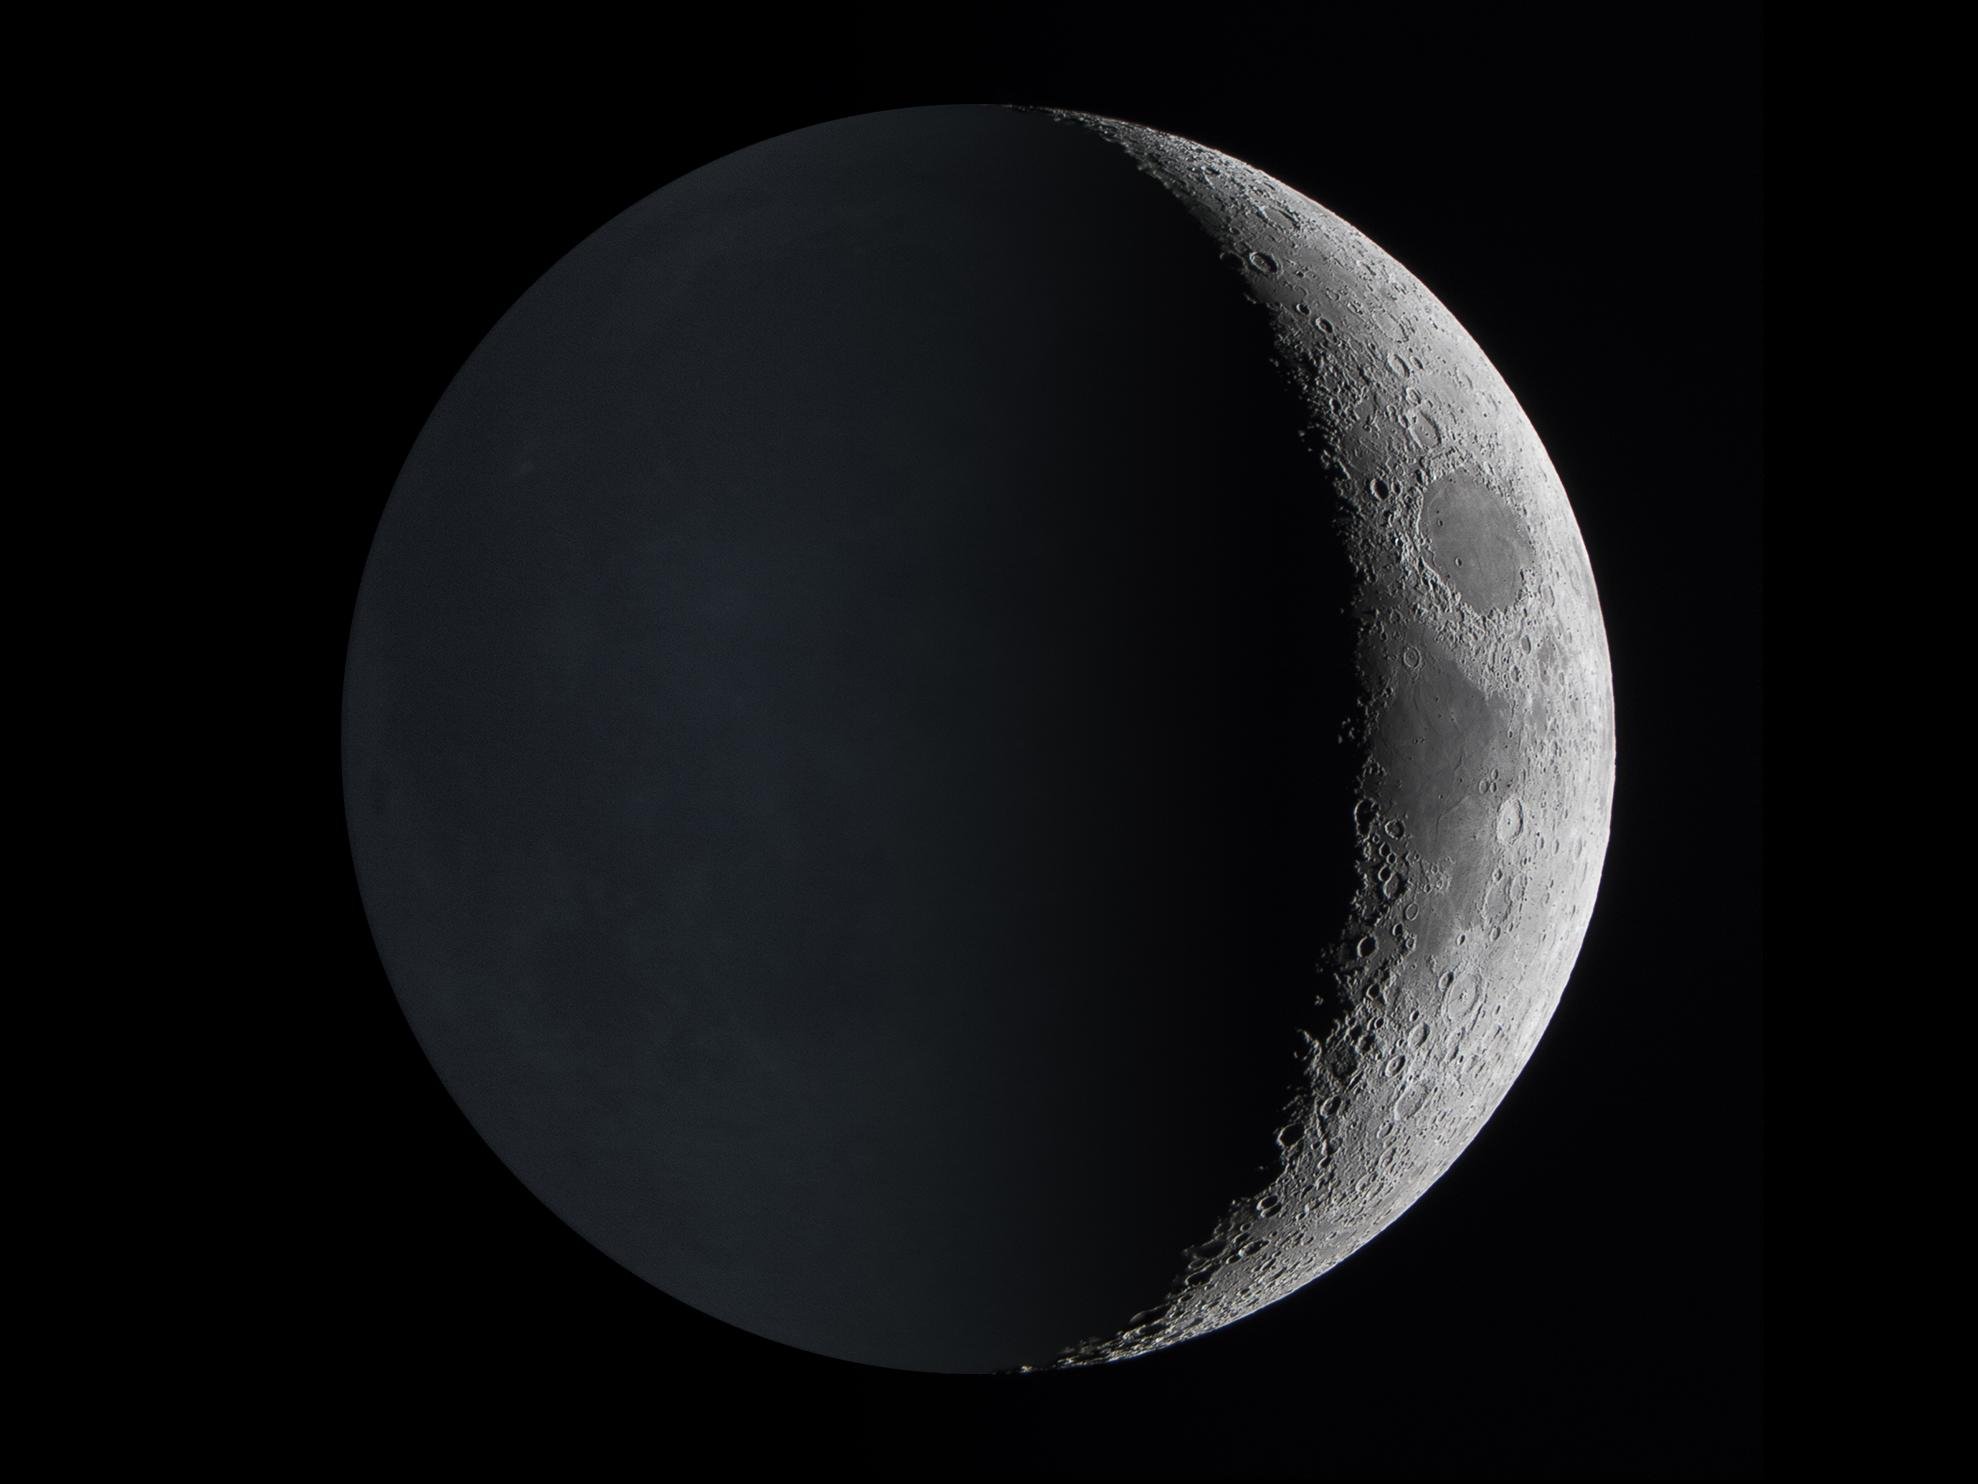 O brilho da Terra é visto refletindo no lado mais obscurecido da superfície lunar.